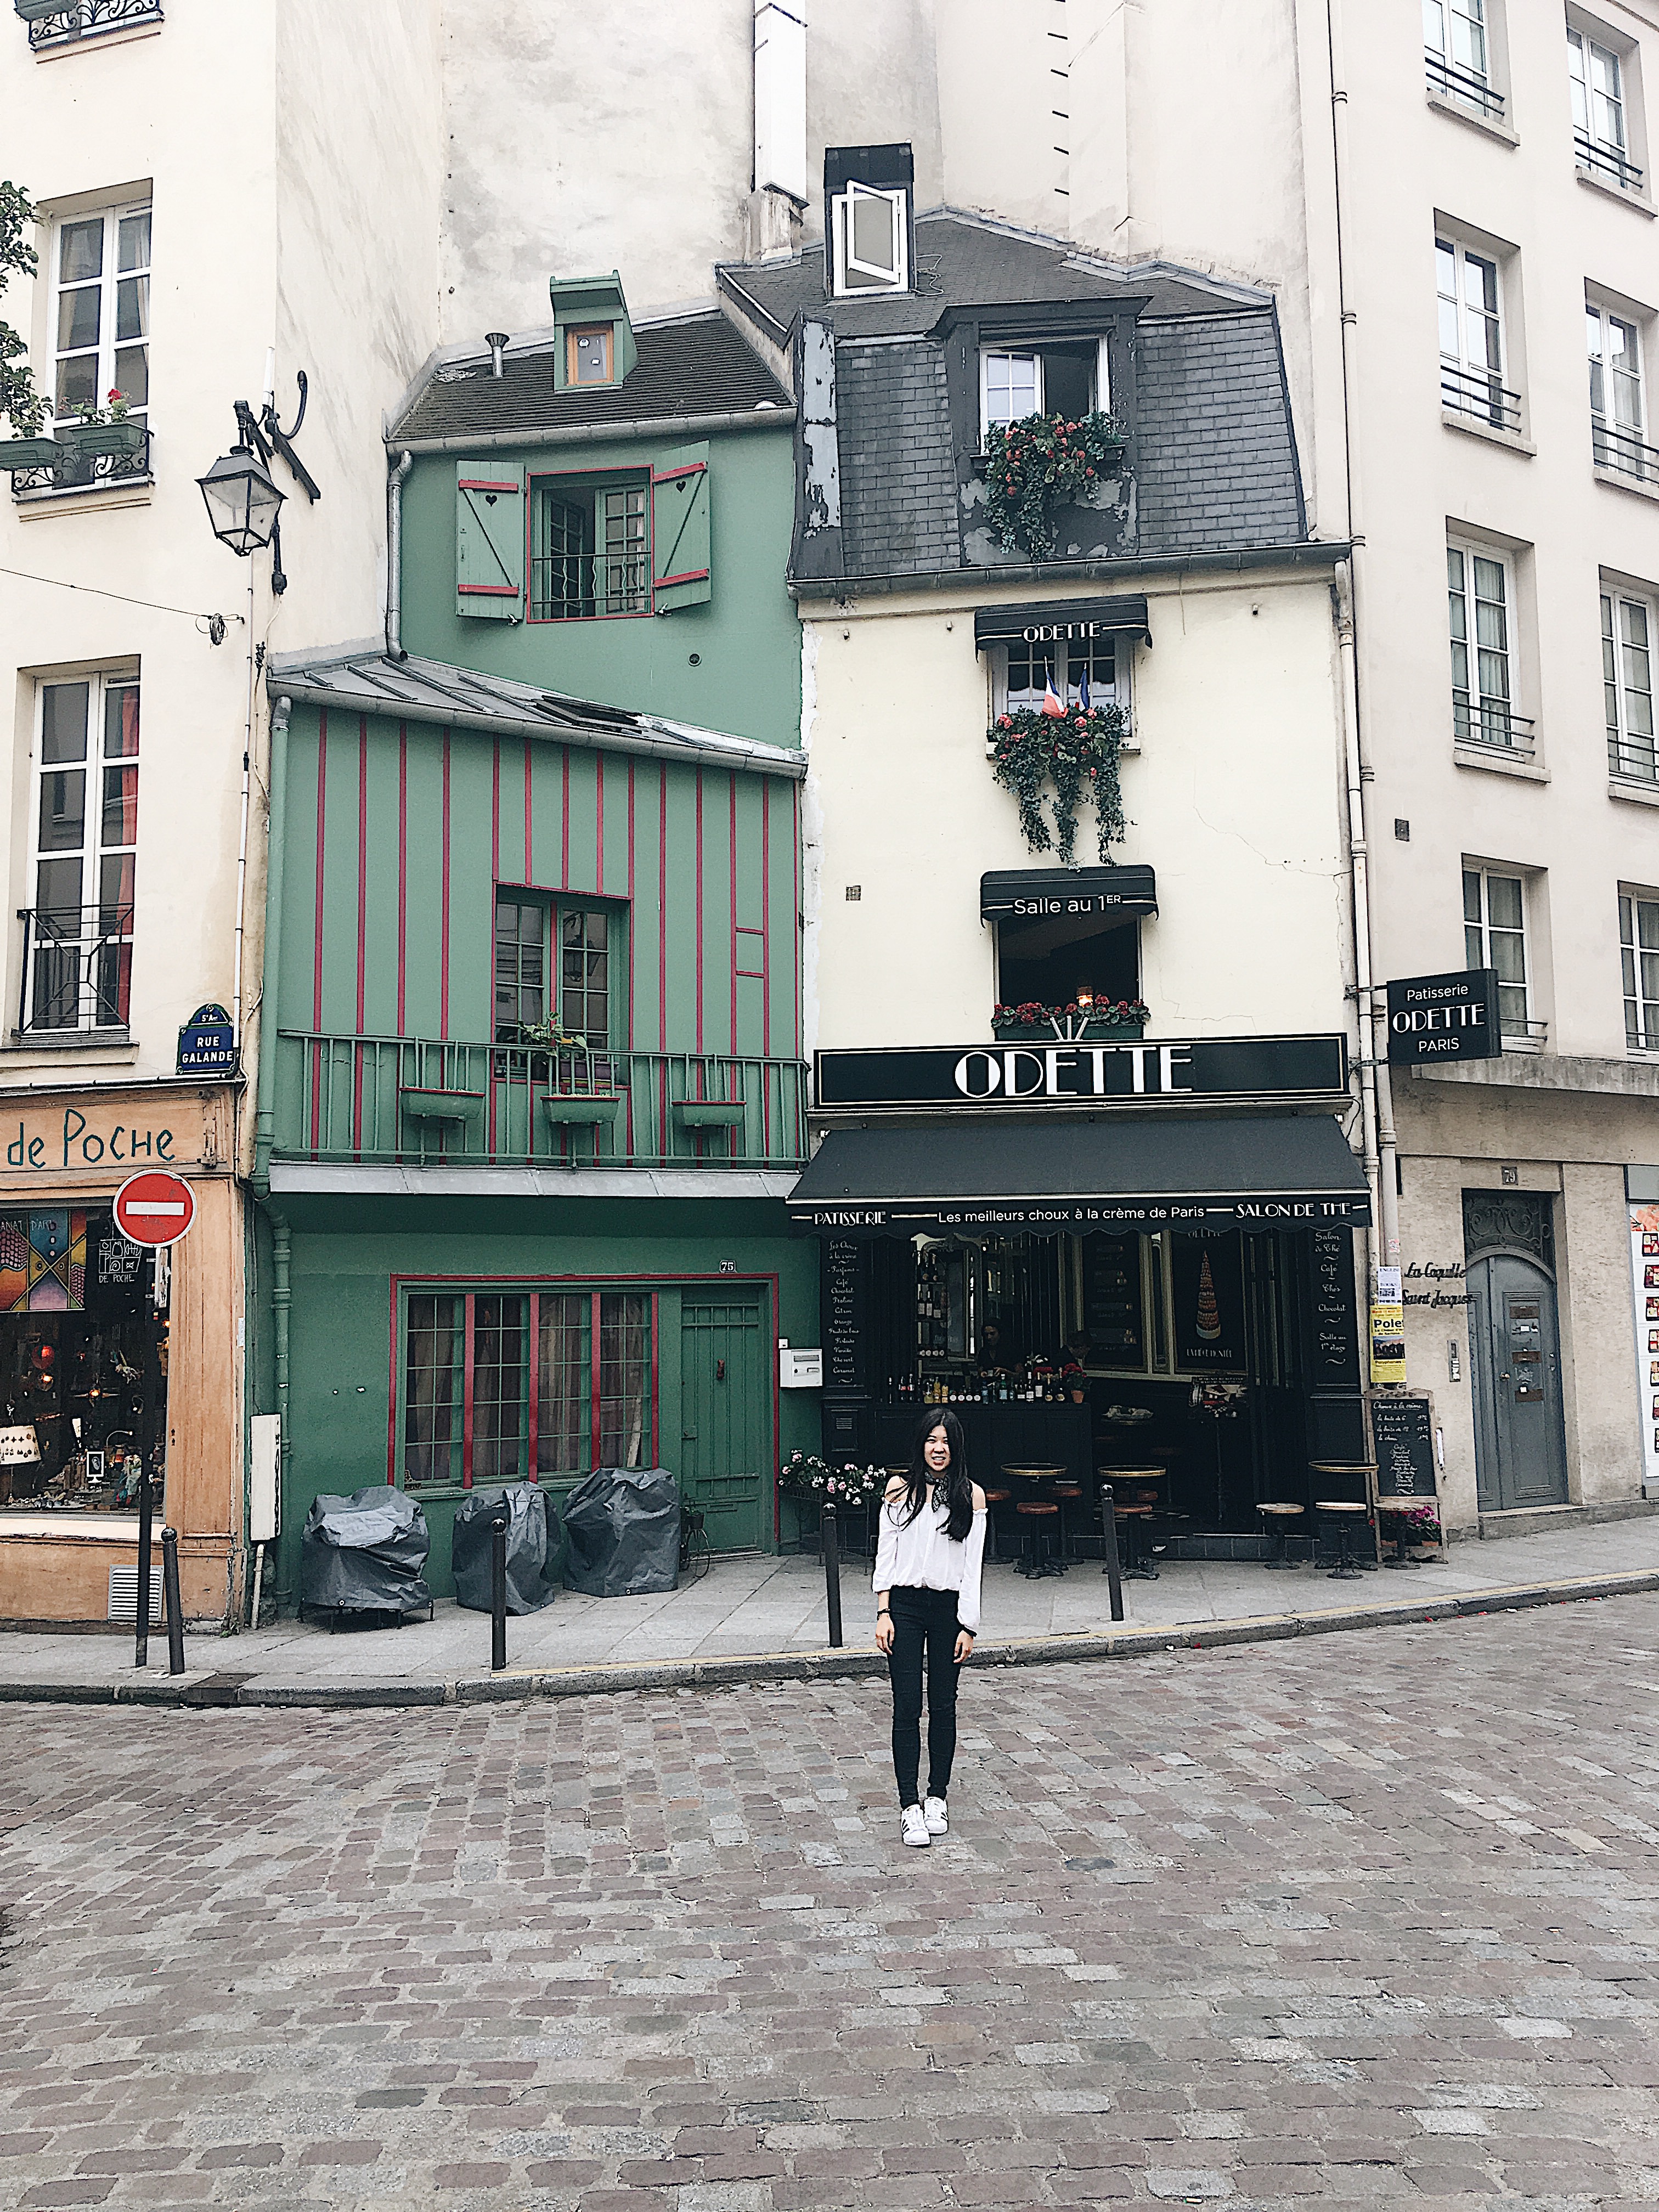 Odette in Paris